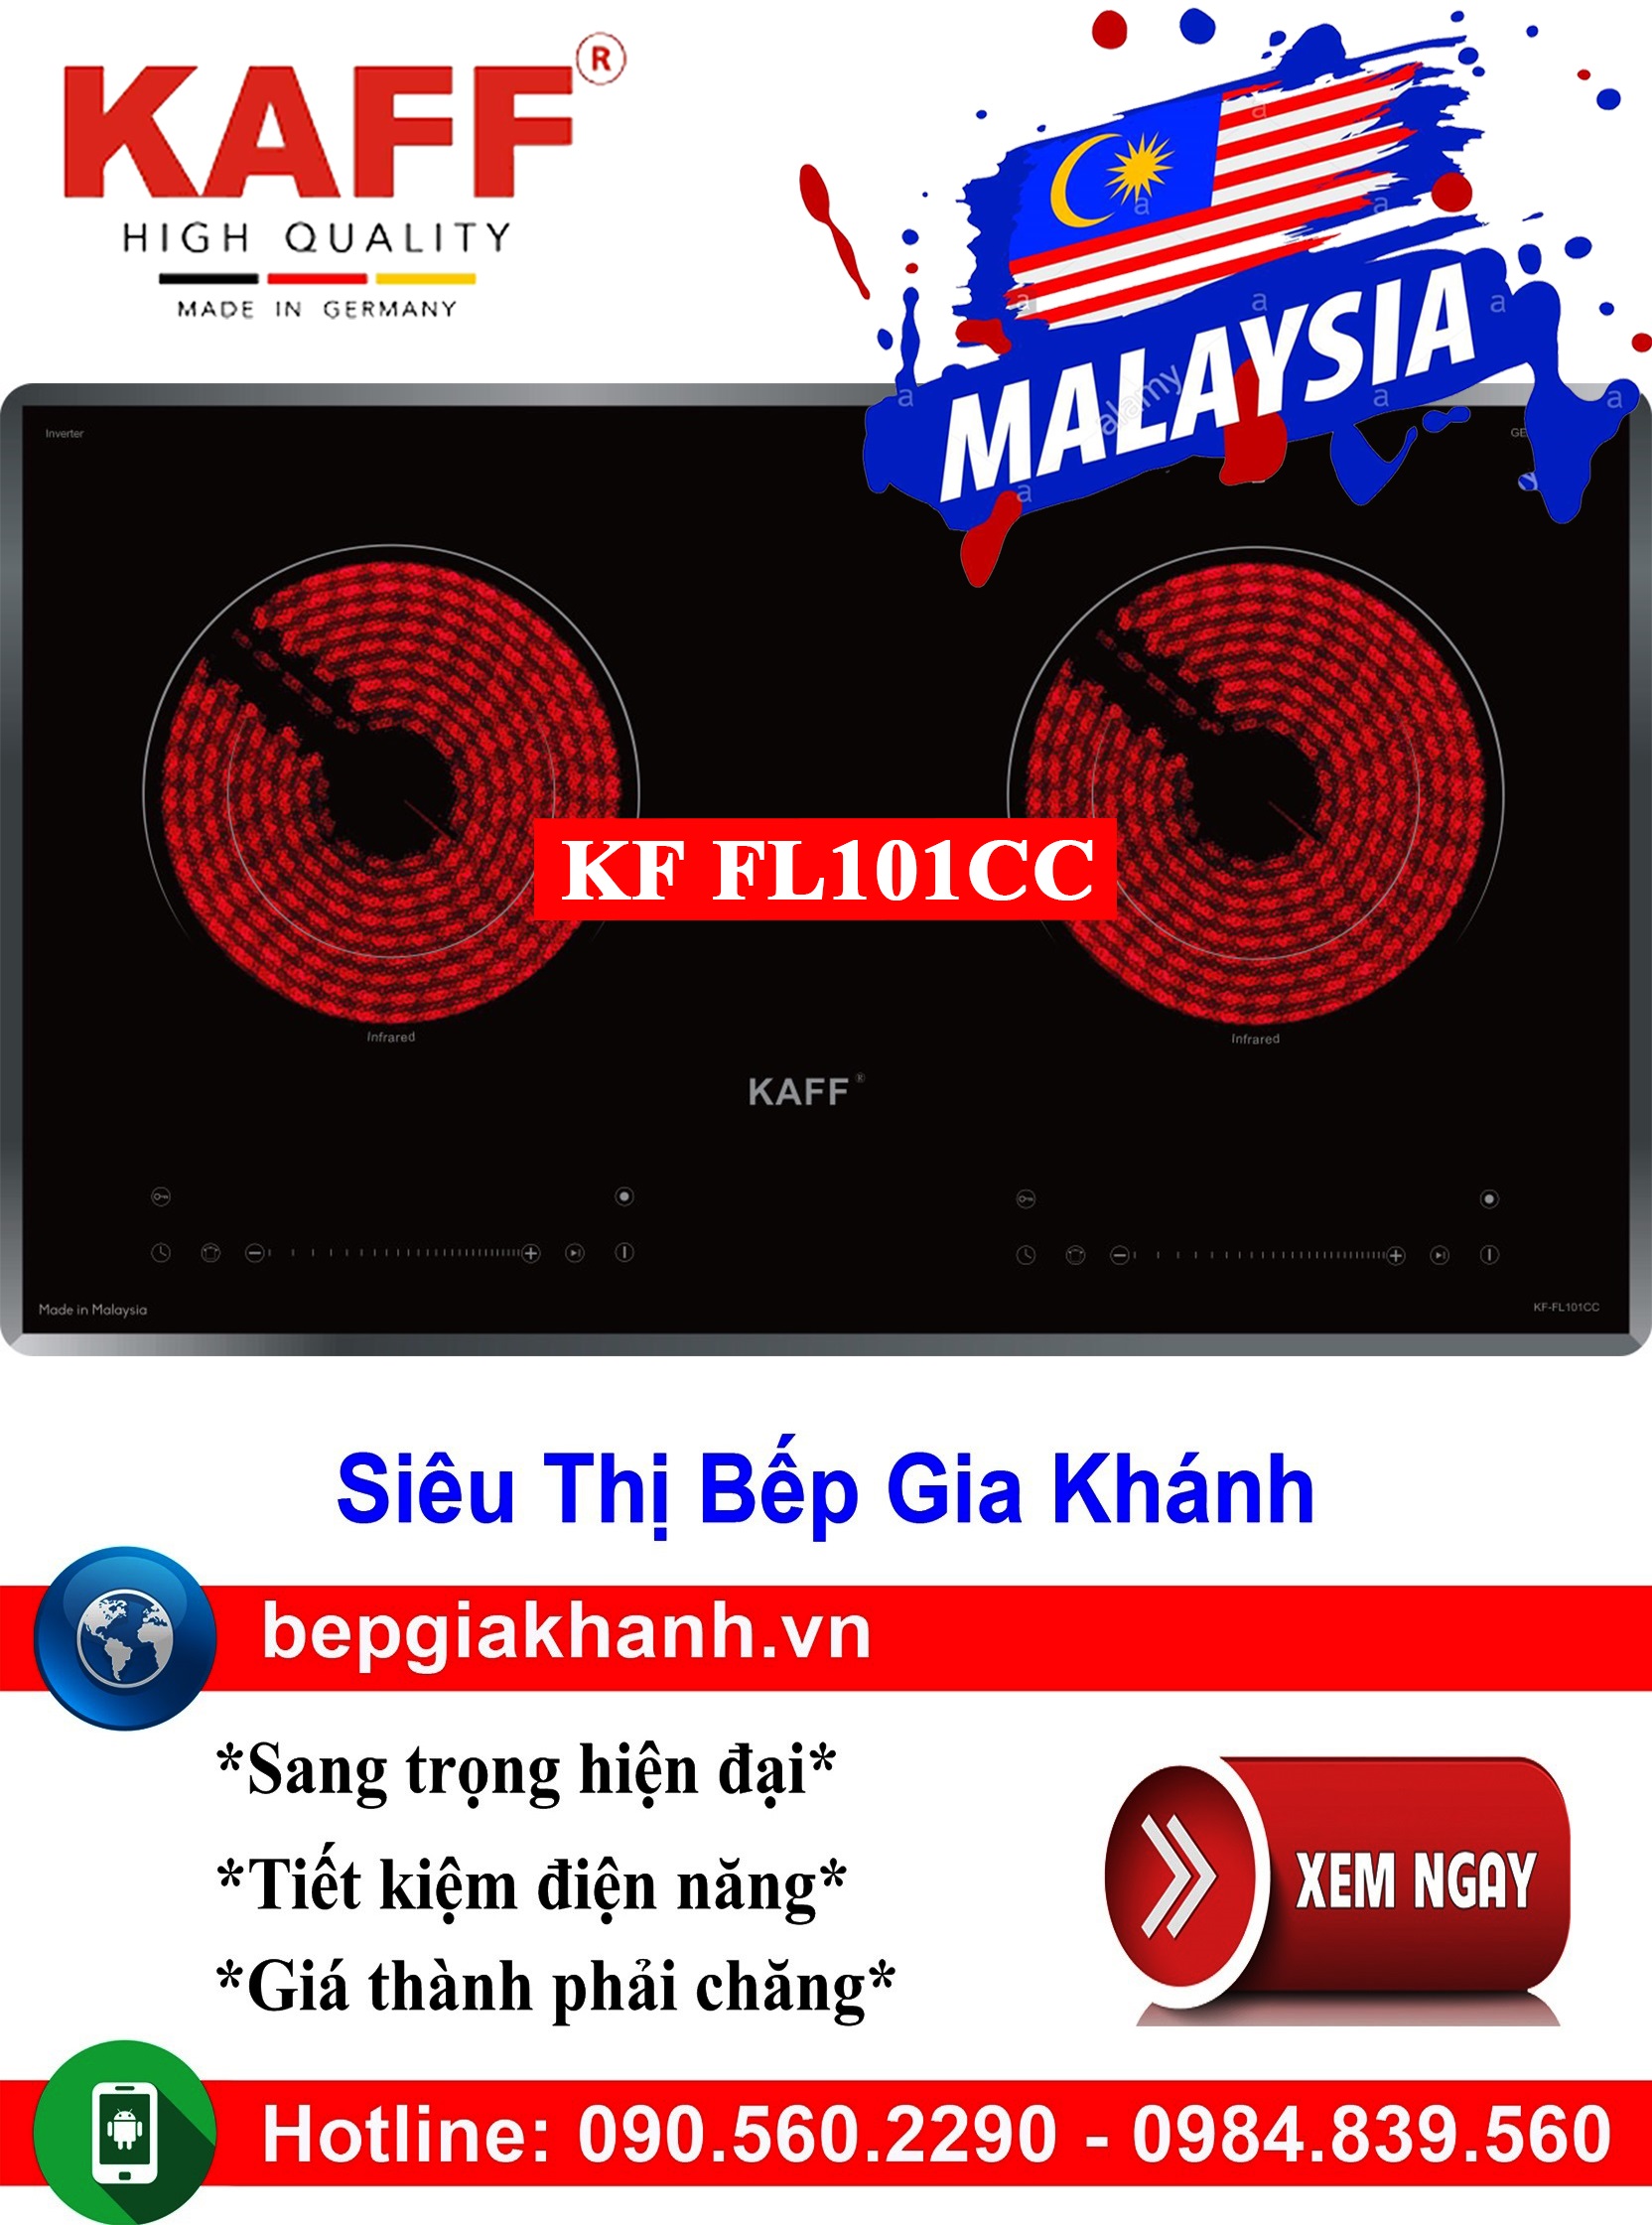 [HCM]Bếp hồng ngoại Kaff KF FL101CC nhập khẩu Malaysia bếp điện bếp điện đơn bếp điện đôi bếp điện mini bếp điện sunhouse bếp hồng ngoại bếp hồng ngoại sunhouse bếp hồng ngoại giá rẻ